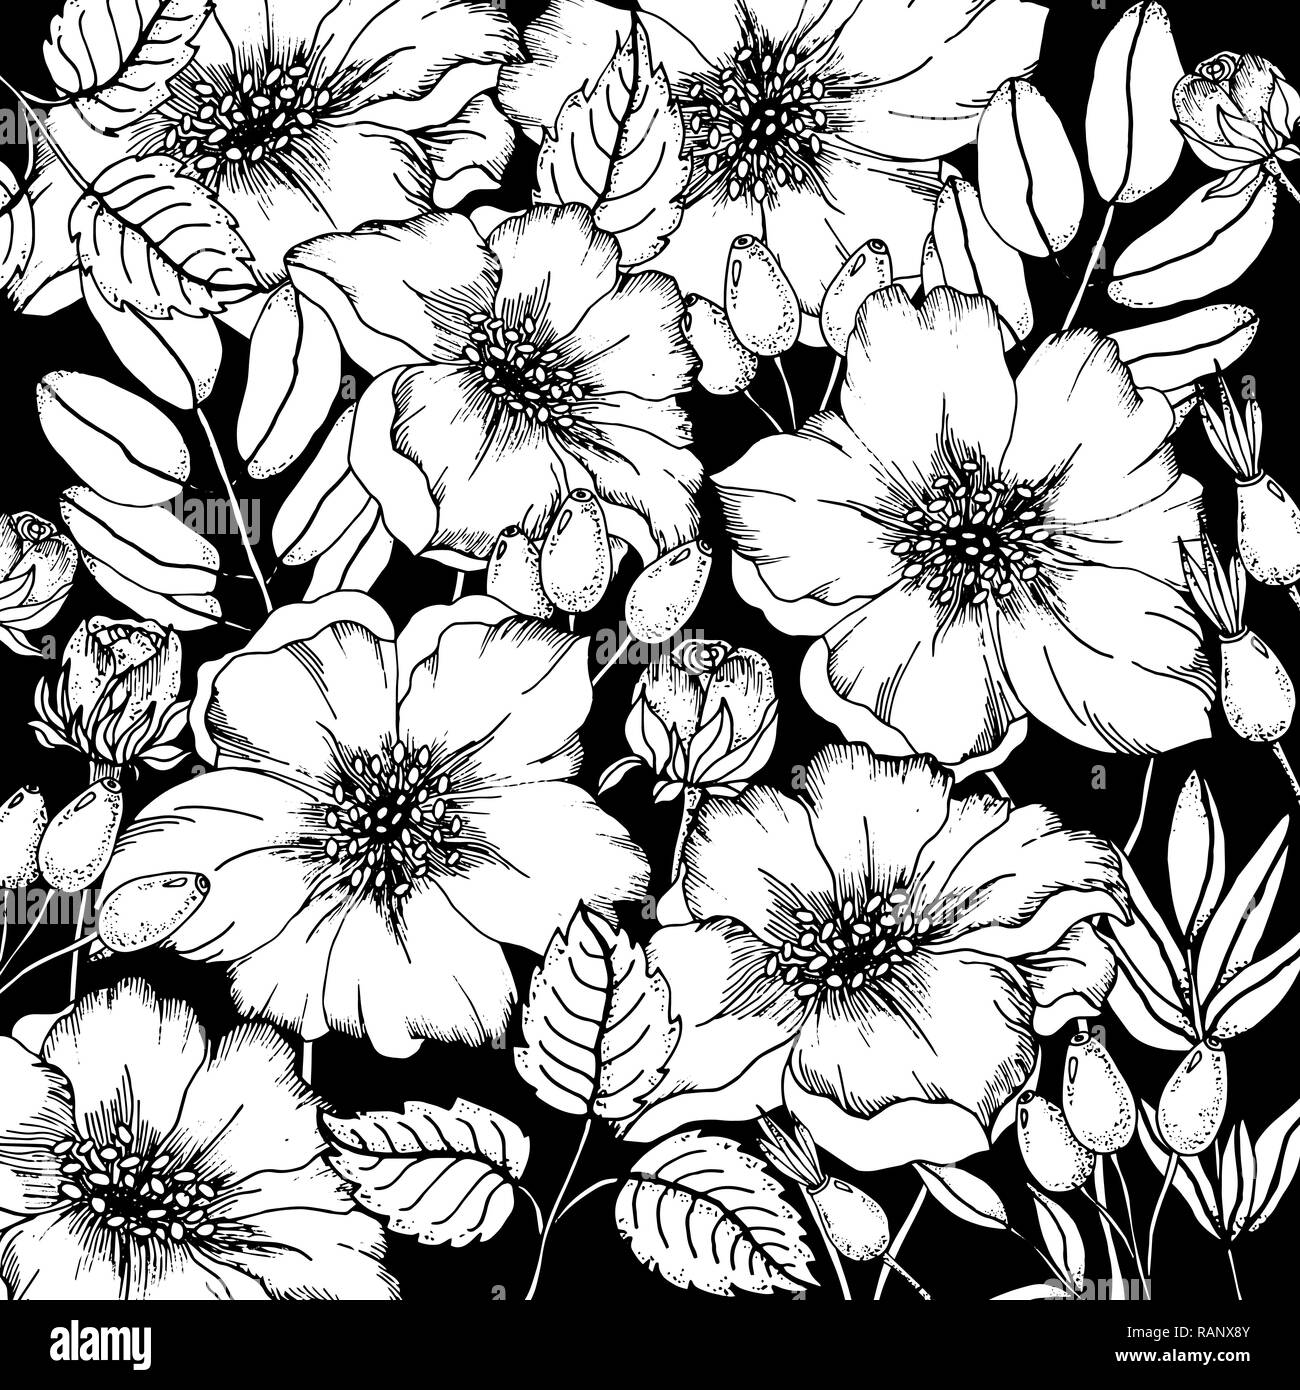 Doodle blumen Hund - rose Hintergrund in Vektor mit doodles schwarze und weiße Färbung. Vektor ethnische Muster kann für Tapeten verwendet werden, musterfüllungen Stock Vektor